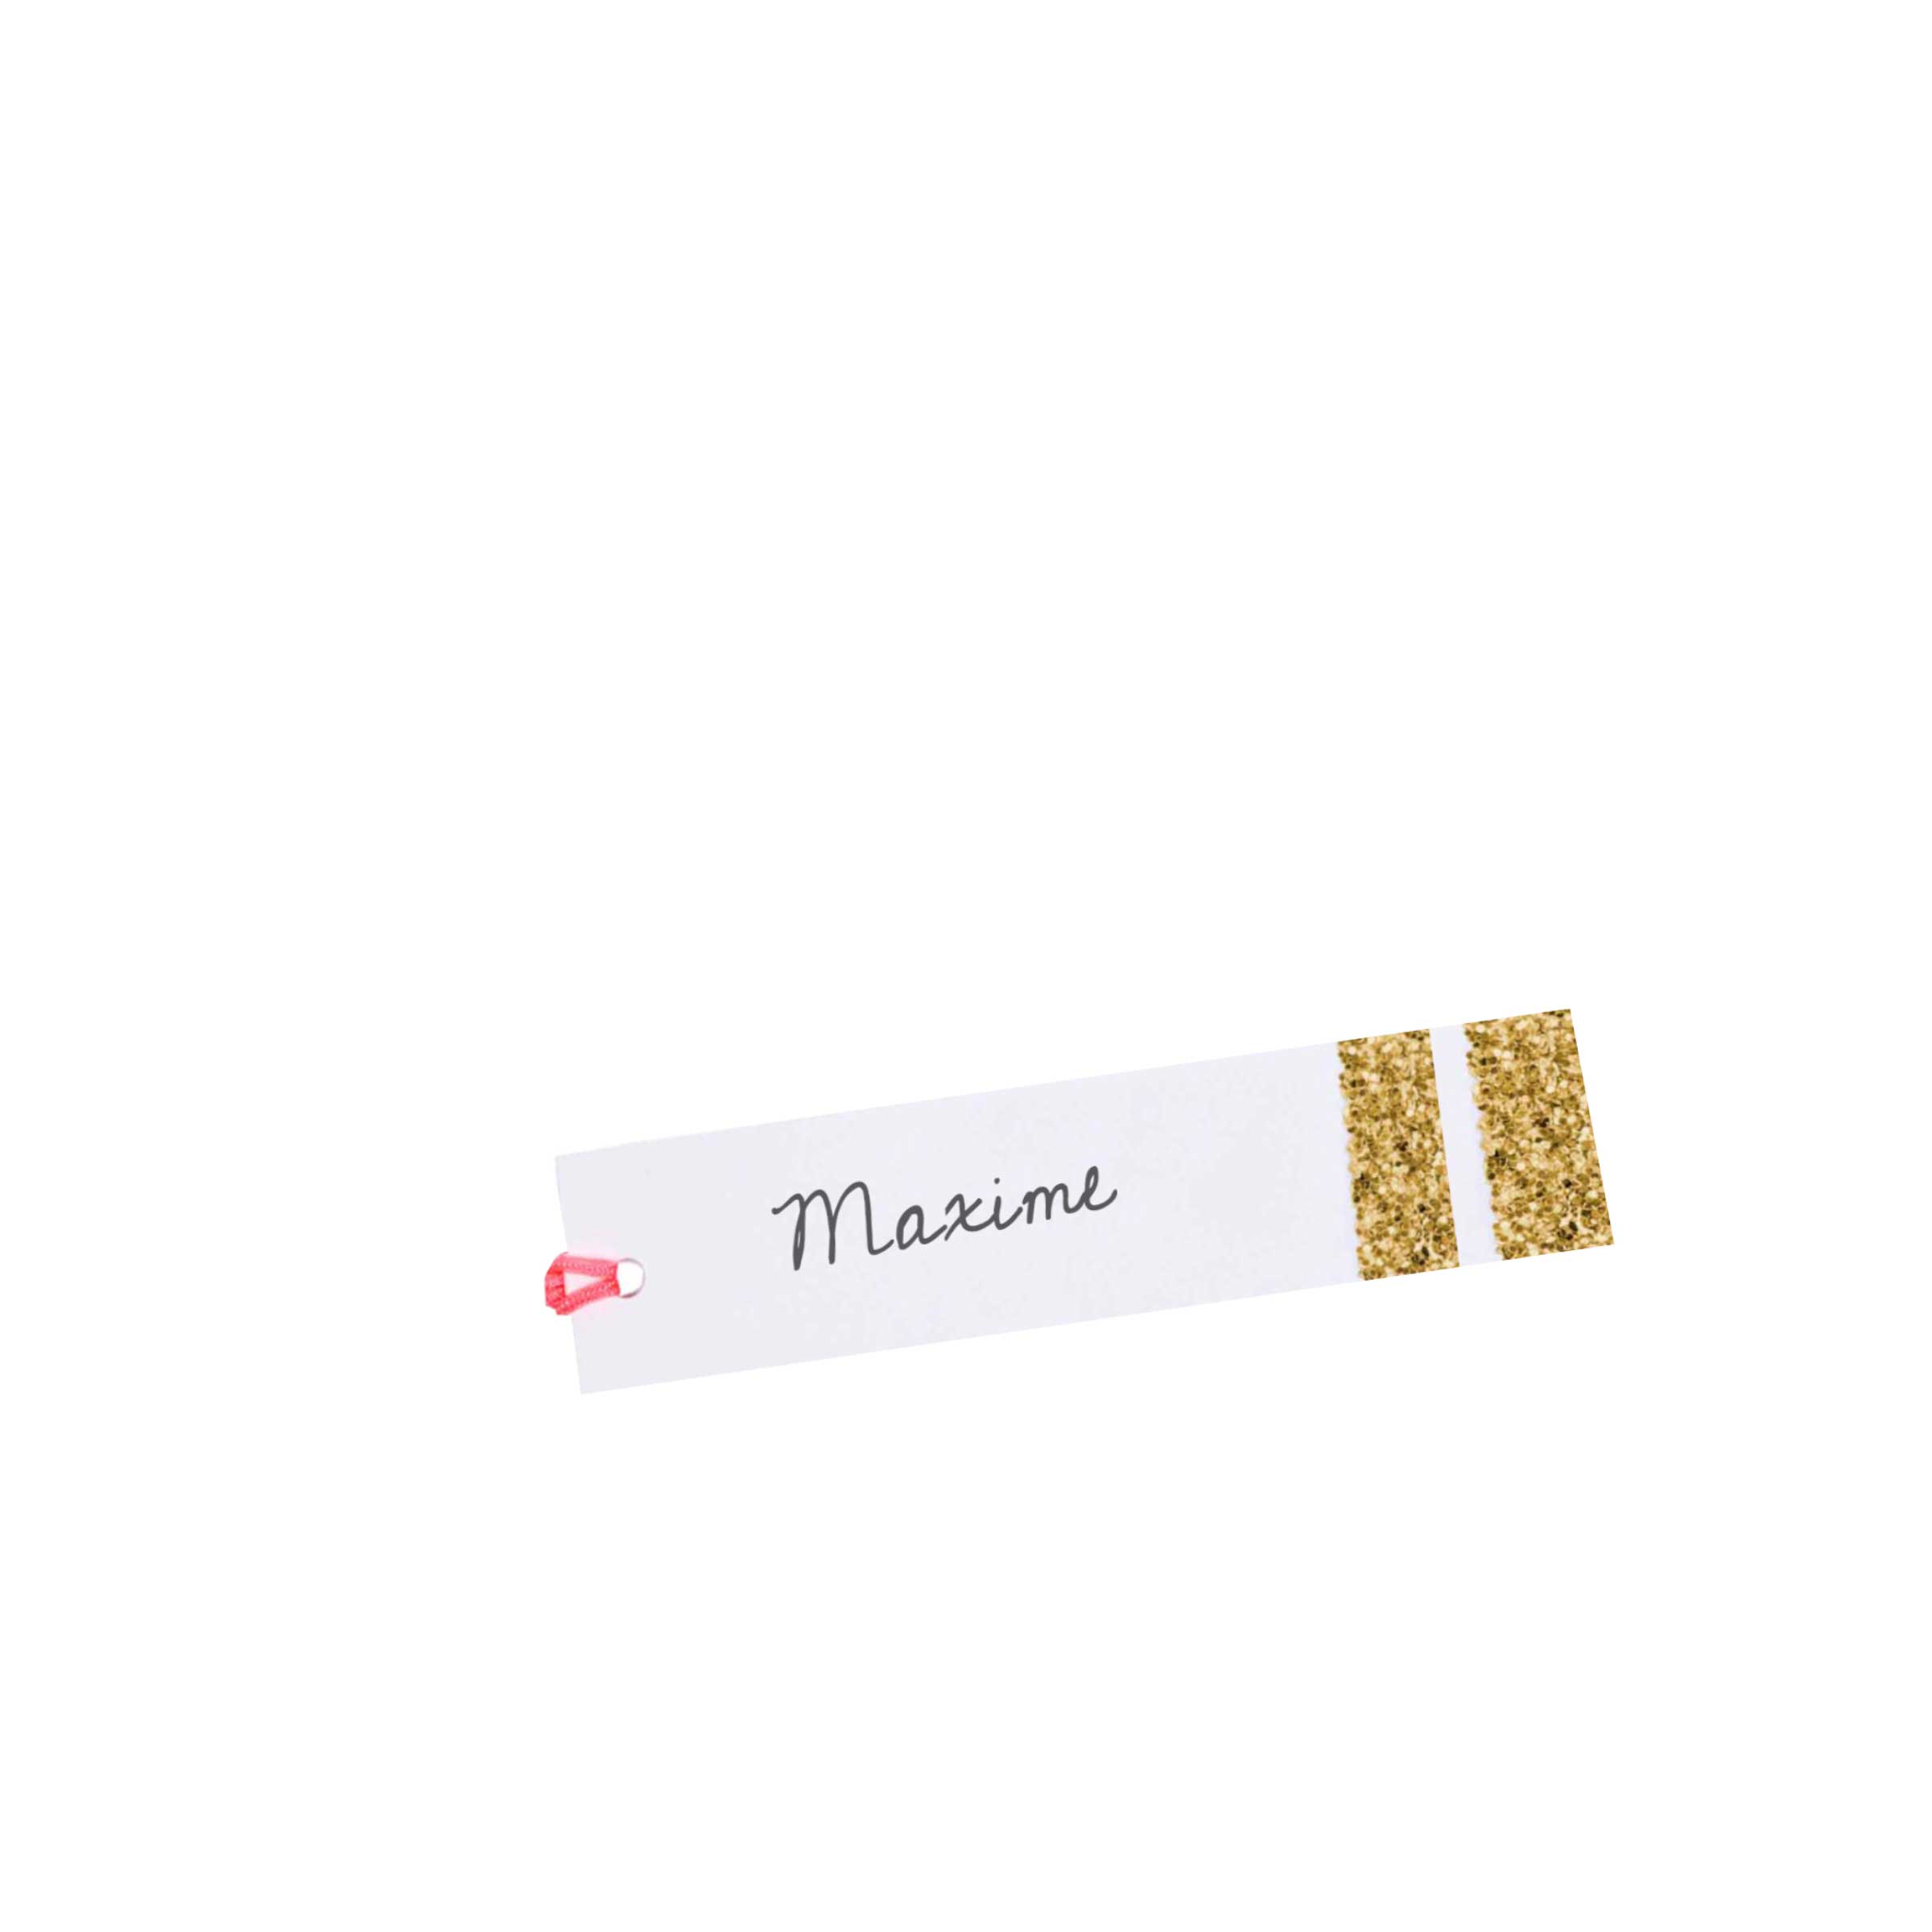 étiquettes cadeaux en papier cartonné blanc avec un liseré doré fournies avec une ficelle rose fluo